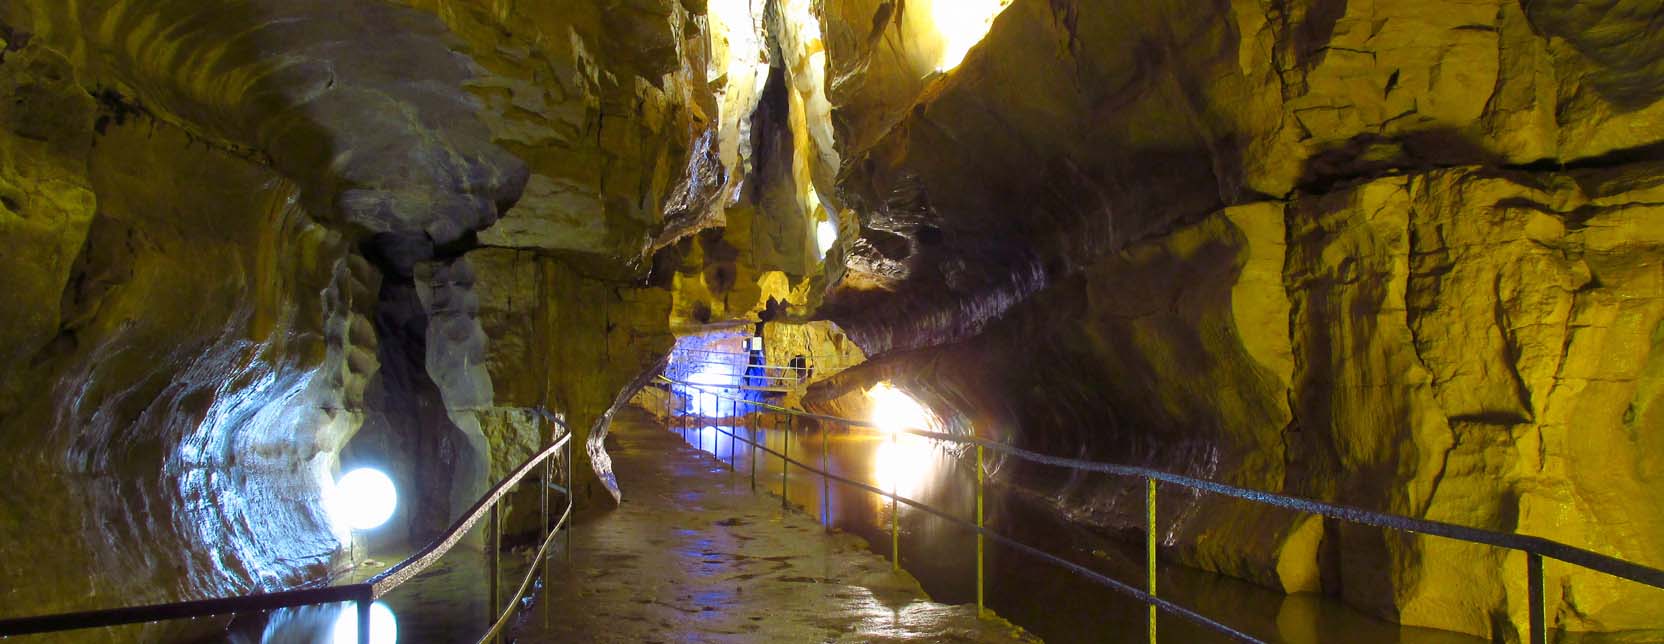 Les Grottes de Baume : Voyage au centre de la terre!